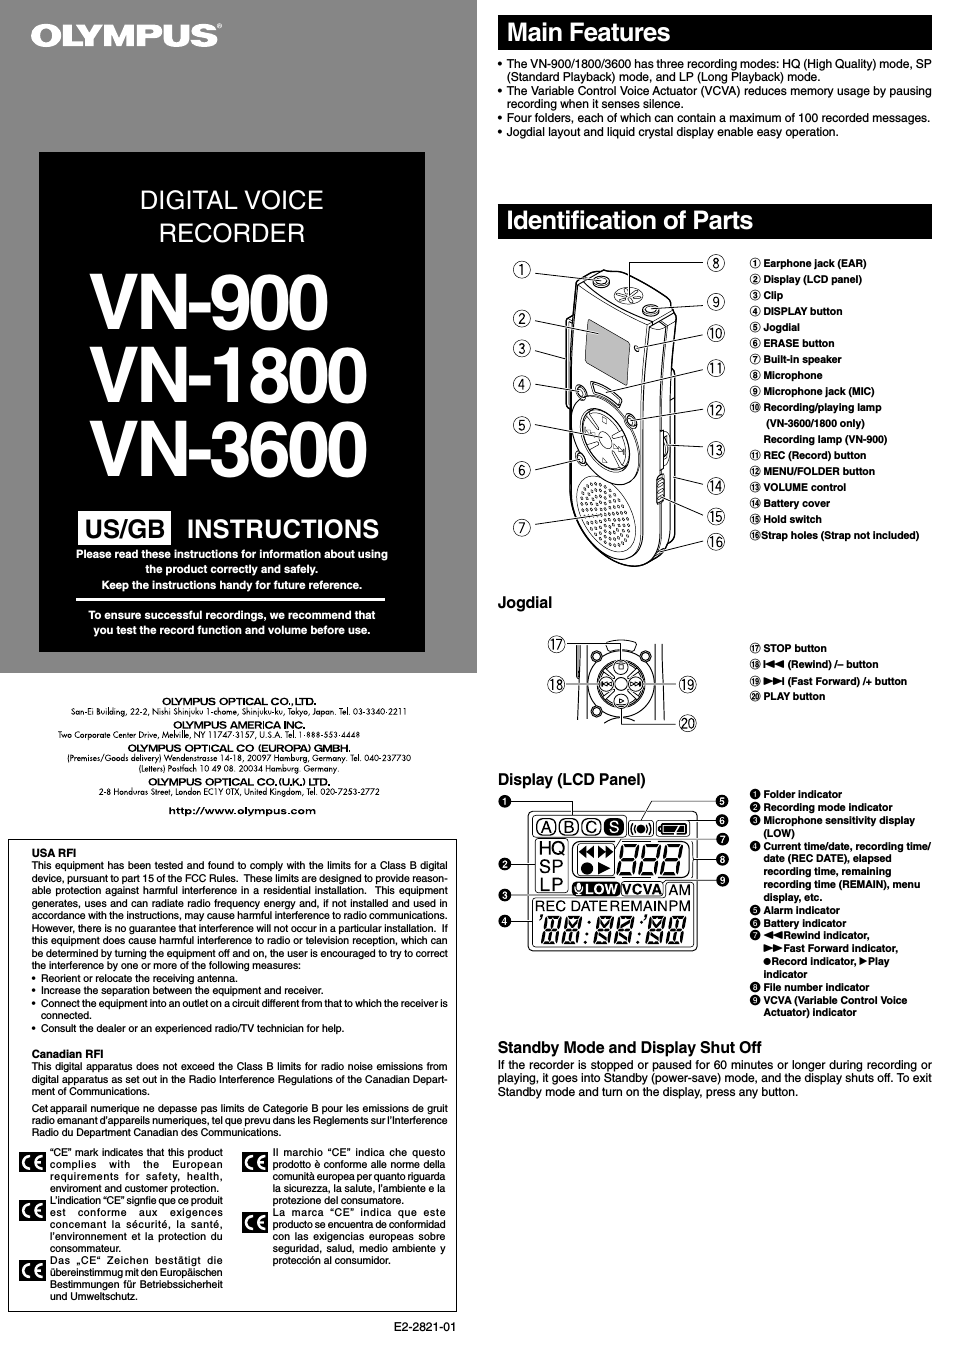 DIGITAL VOICE VN-900